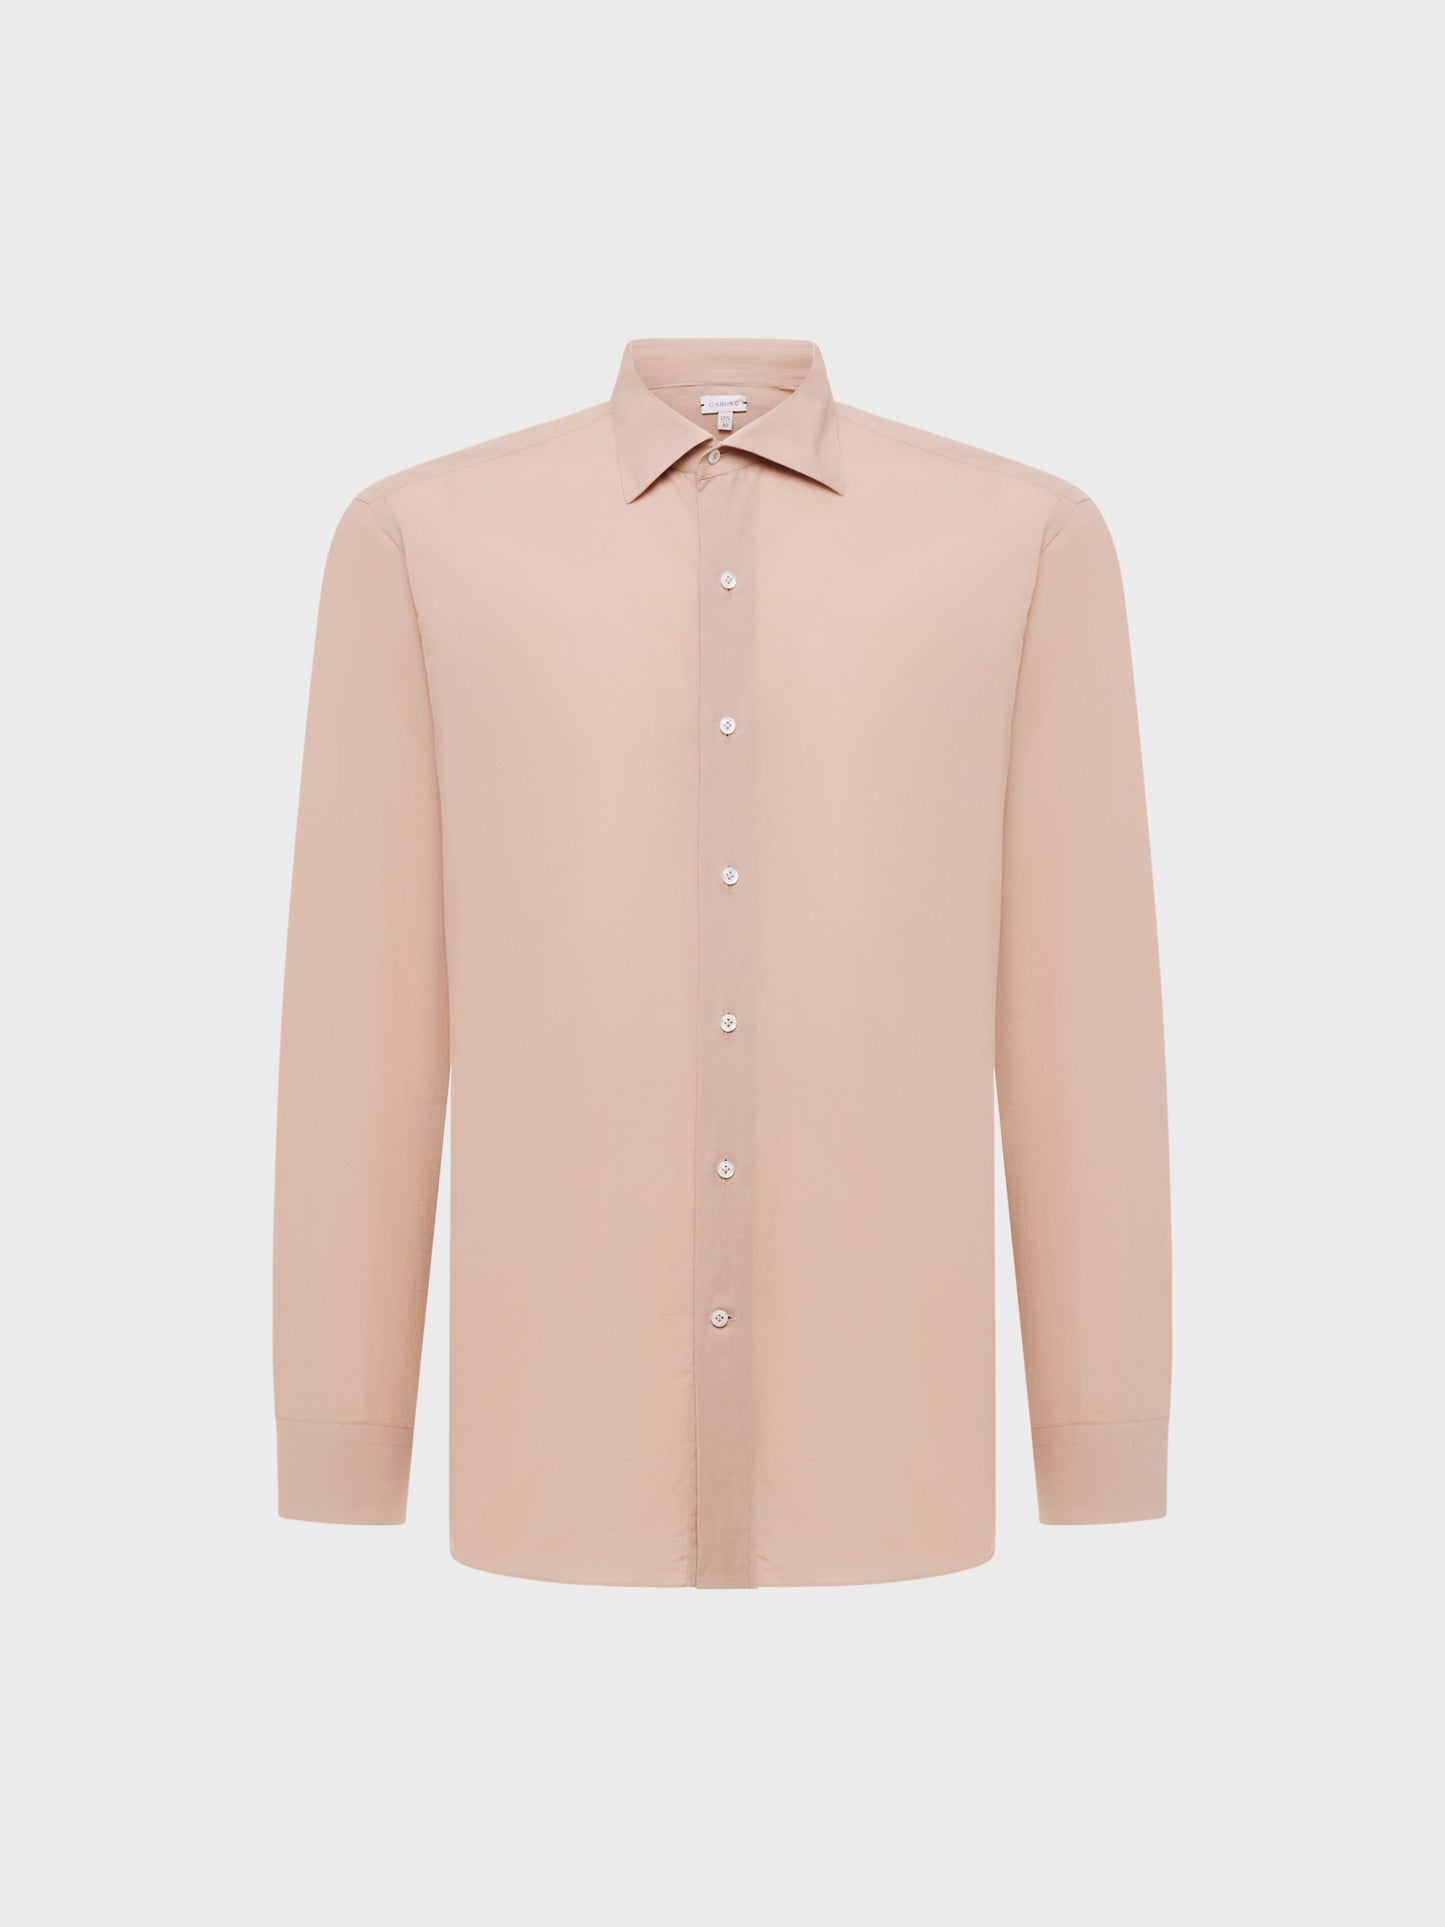 Caruso Menswear Abbigliamento Uomo Camicia slim fit in cotone rosa antico still